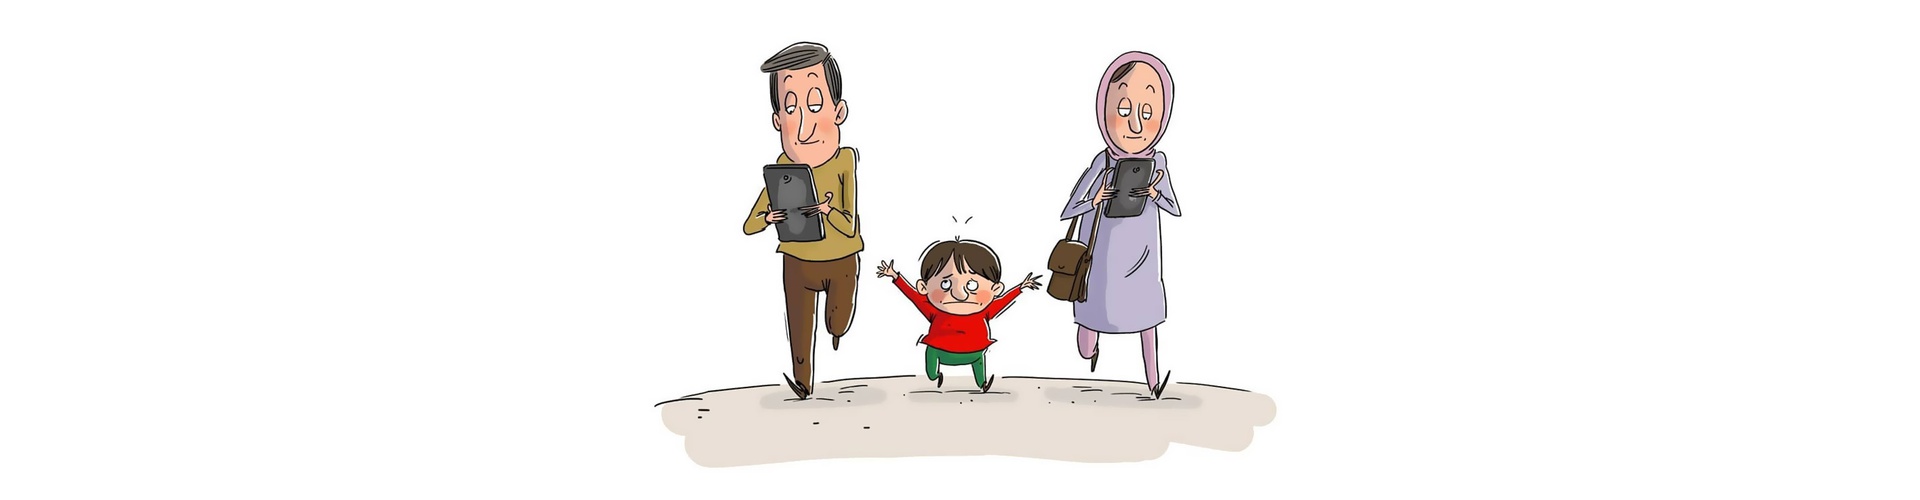 گالری کارتون‌های مهناز یزدانی از ایران